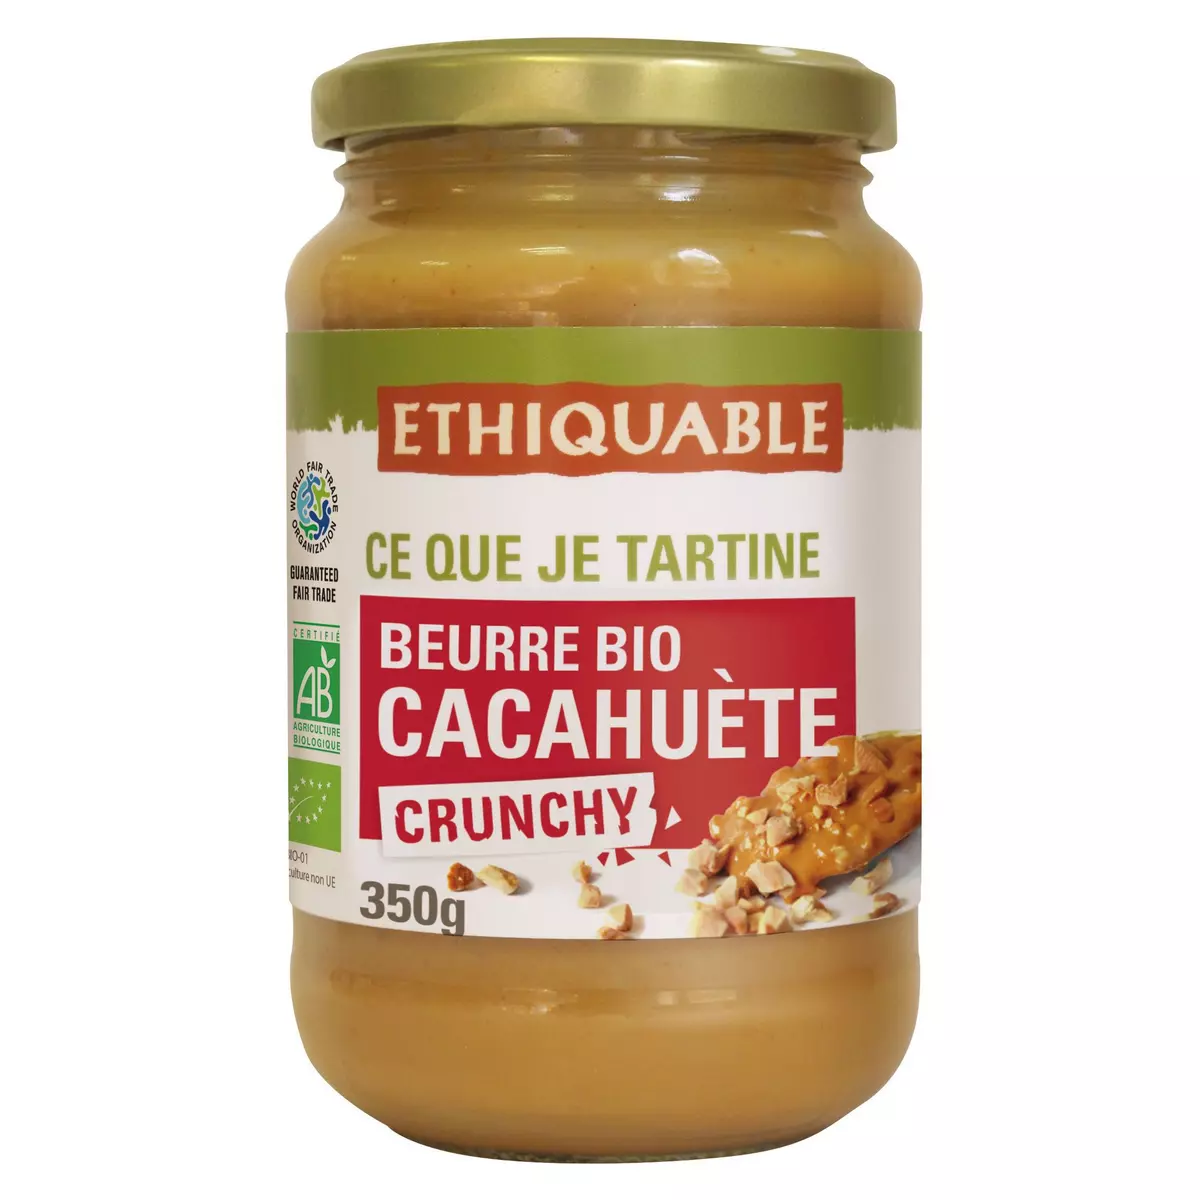 ETHIQUABLE Beurre bio de cacahuète Crunchy 350g